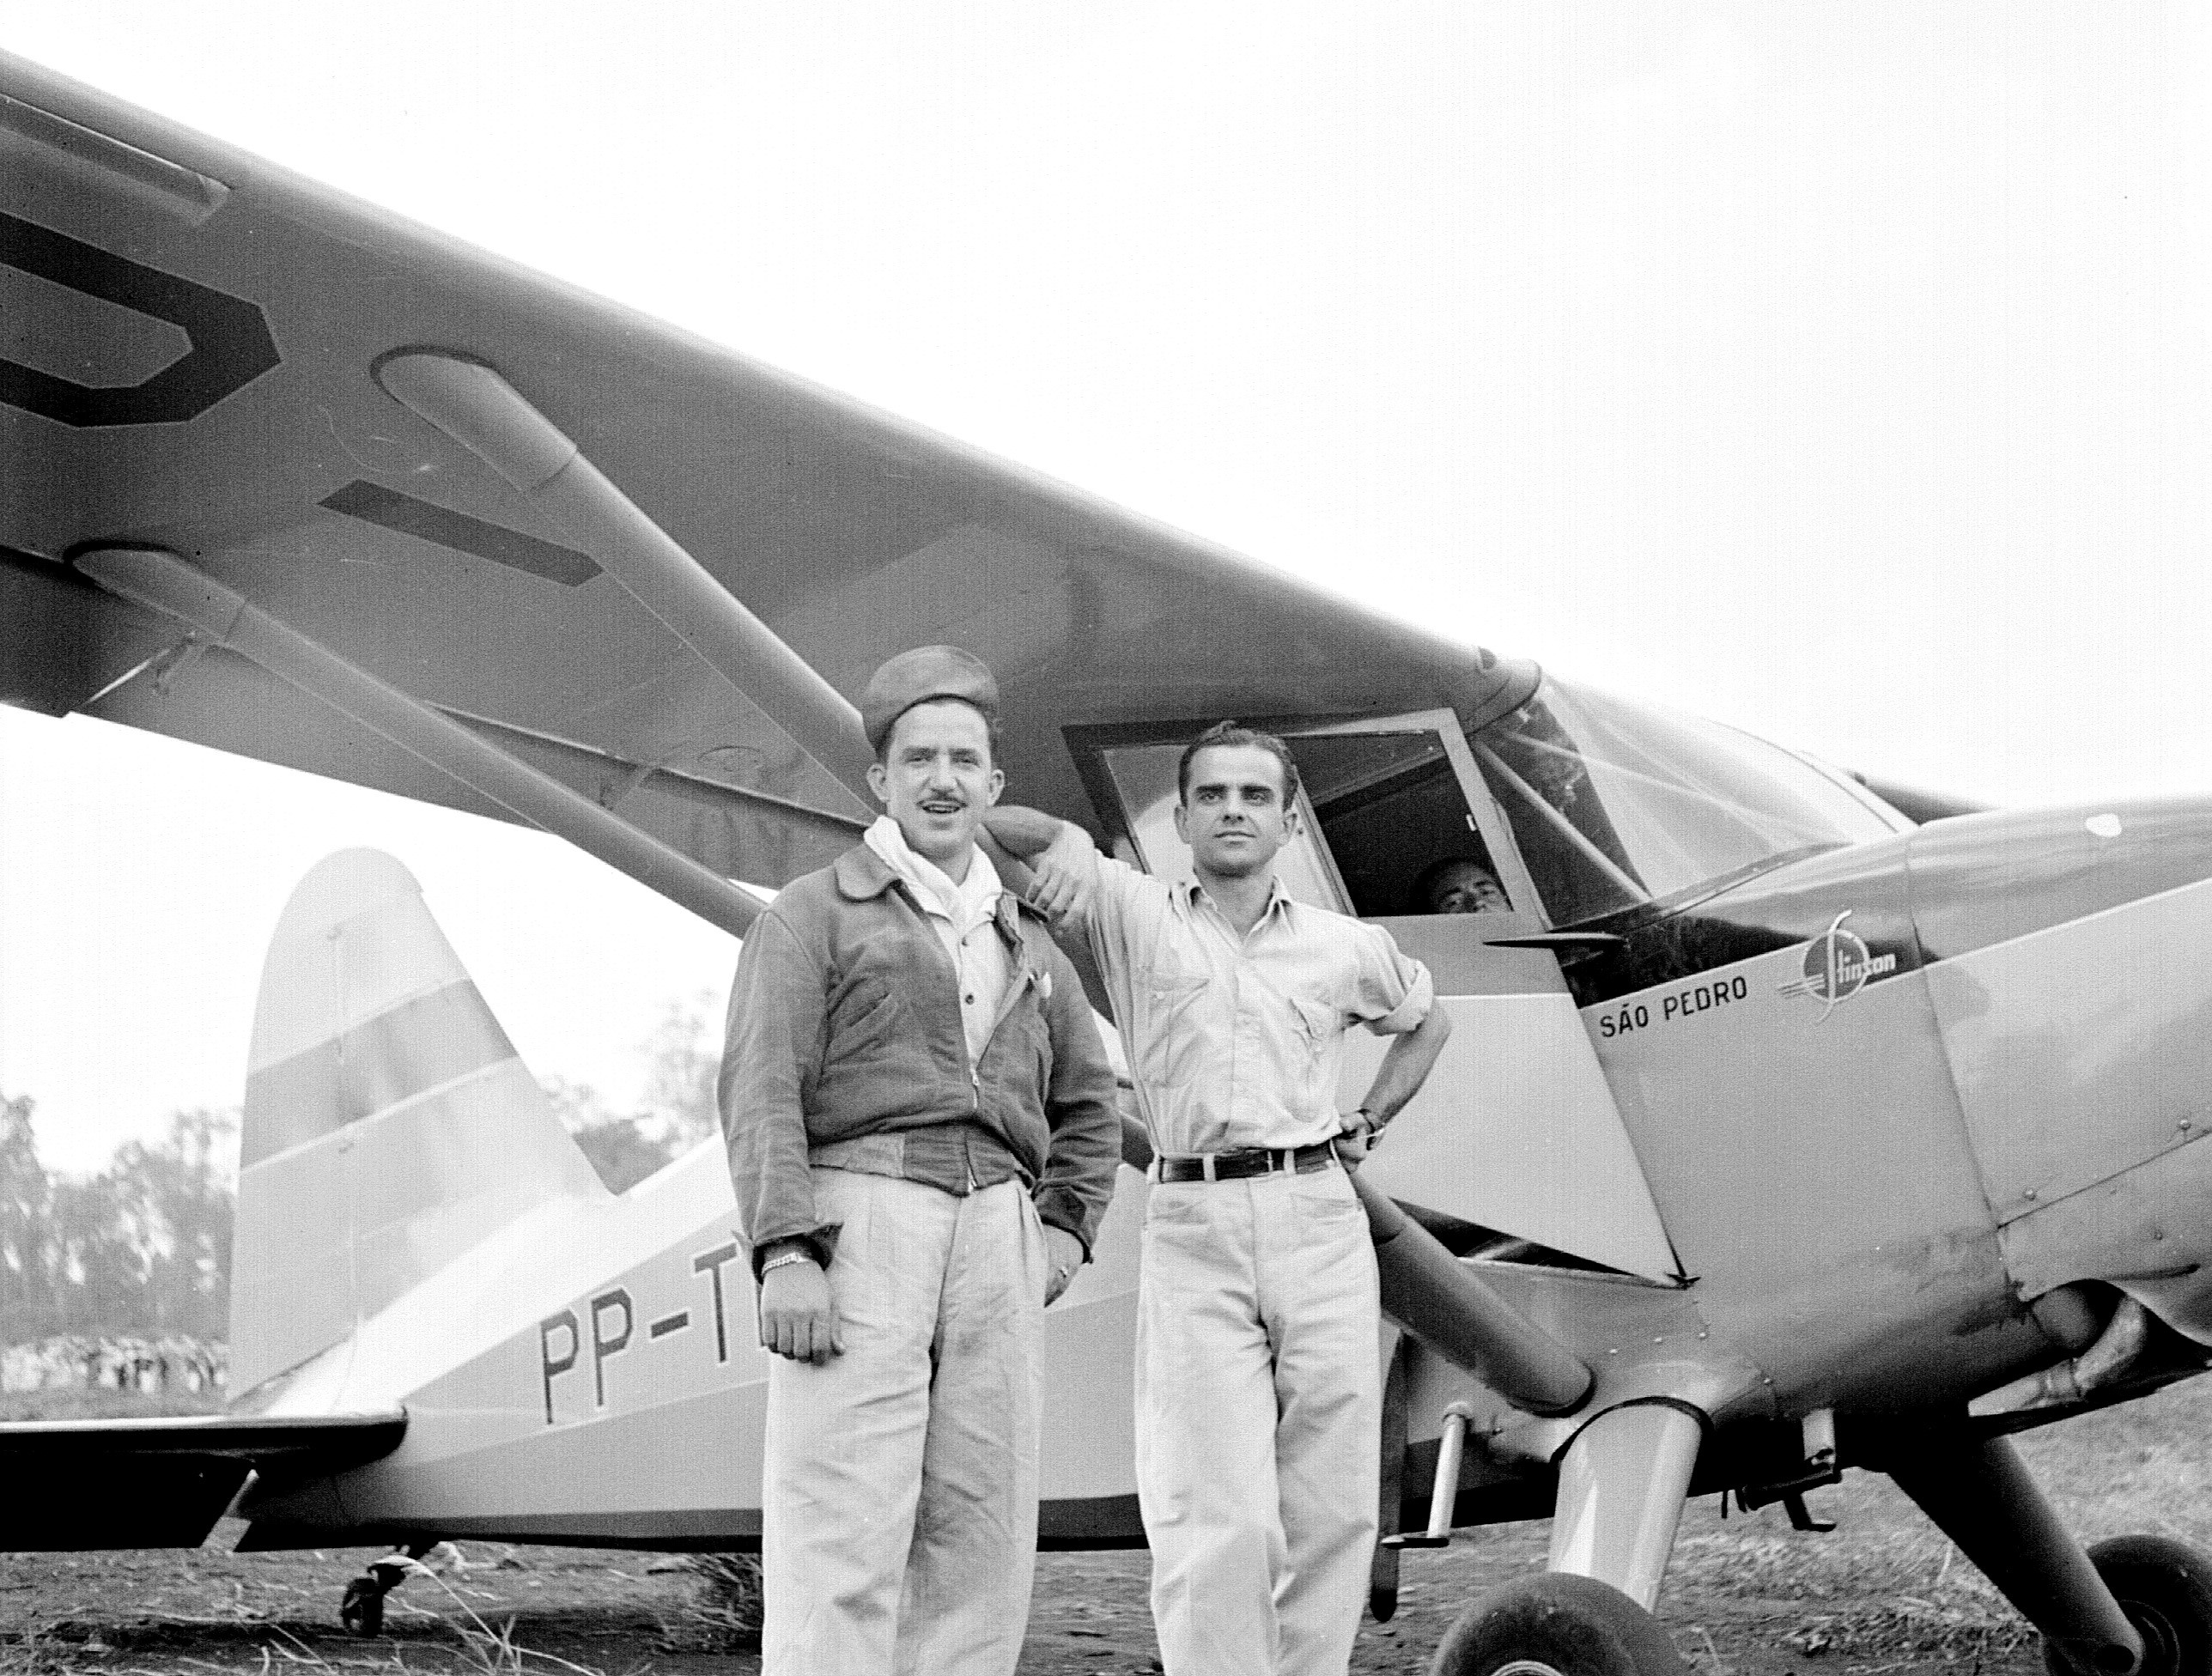 Pilotos no campo de aviação - 1949